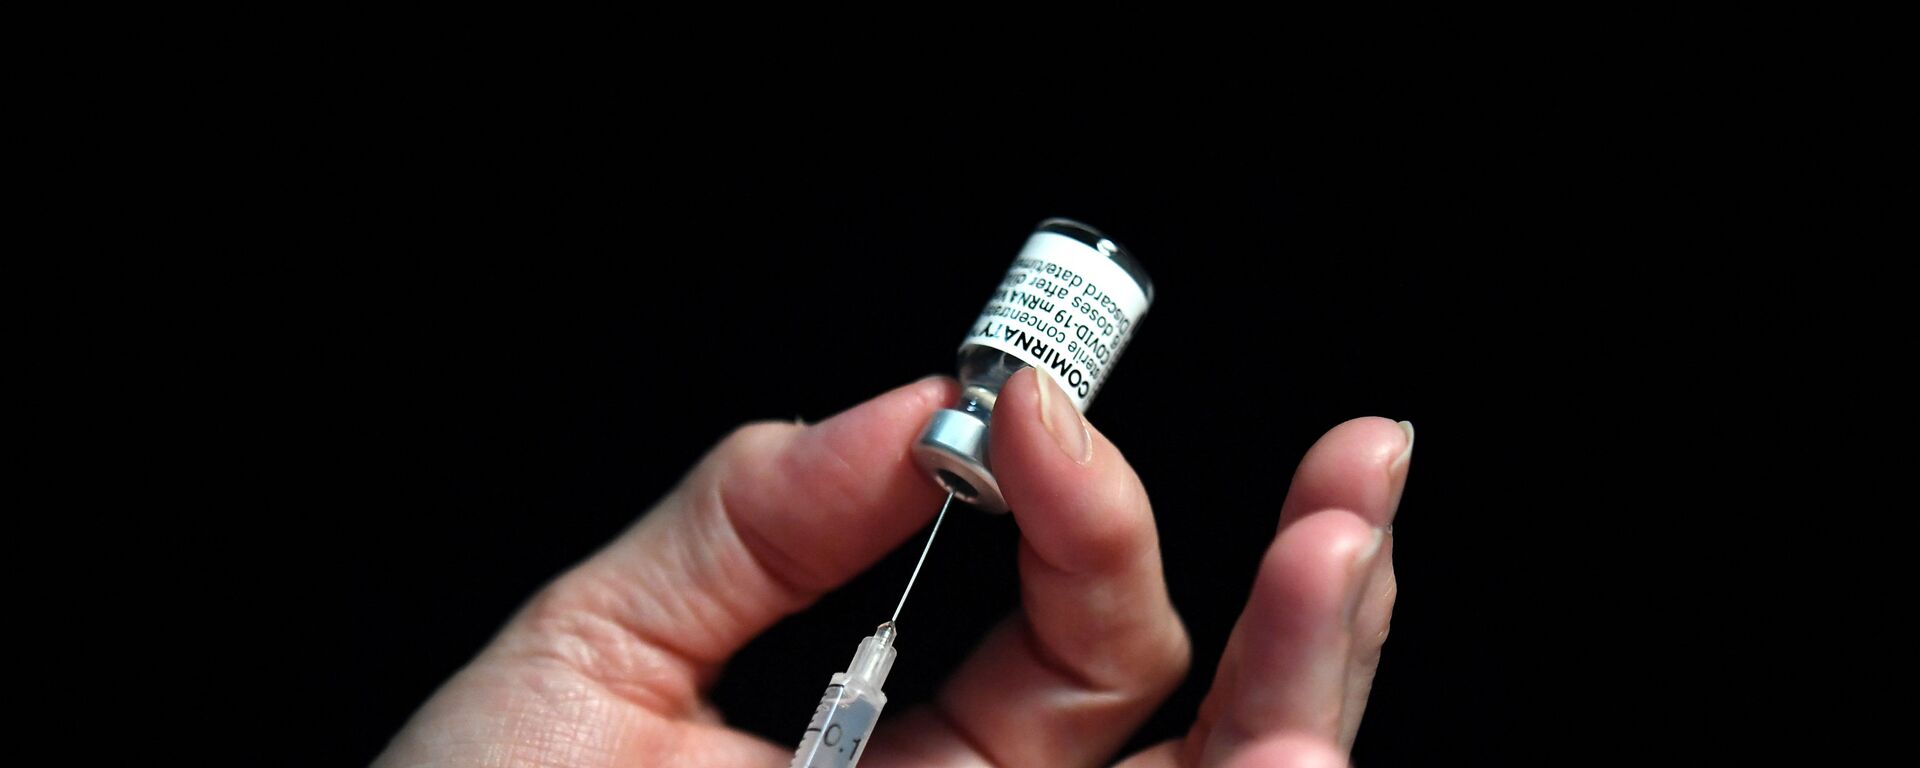 Une infirmière française tient une seringue avec le vaccin de Pfizer, le 31 mai 2021 - Sputnik Afrique, 1920, 04.07.2021